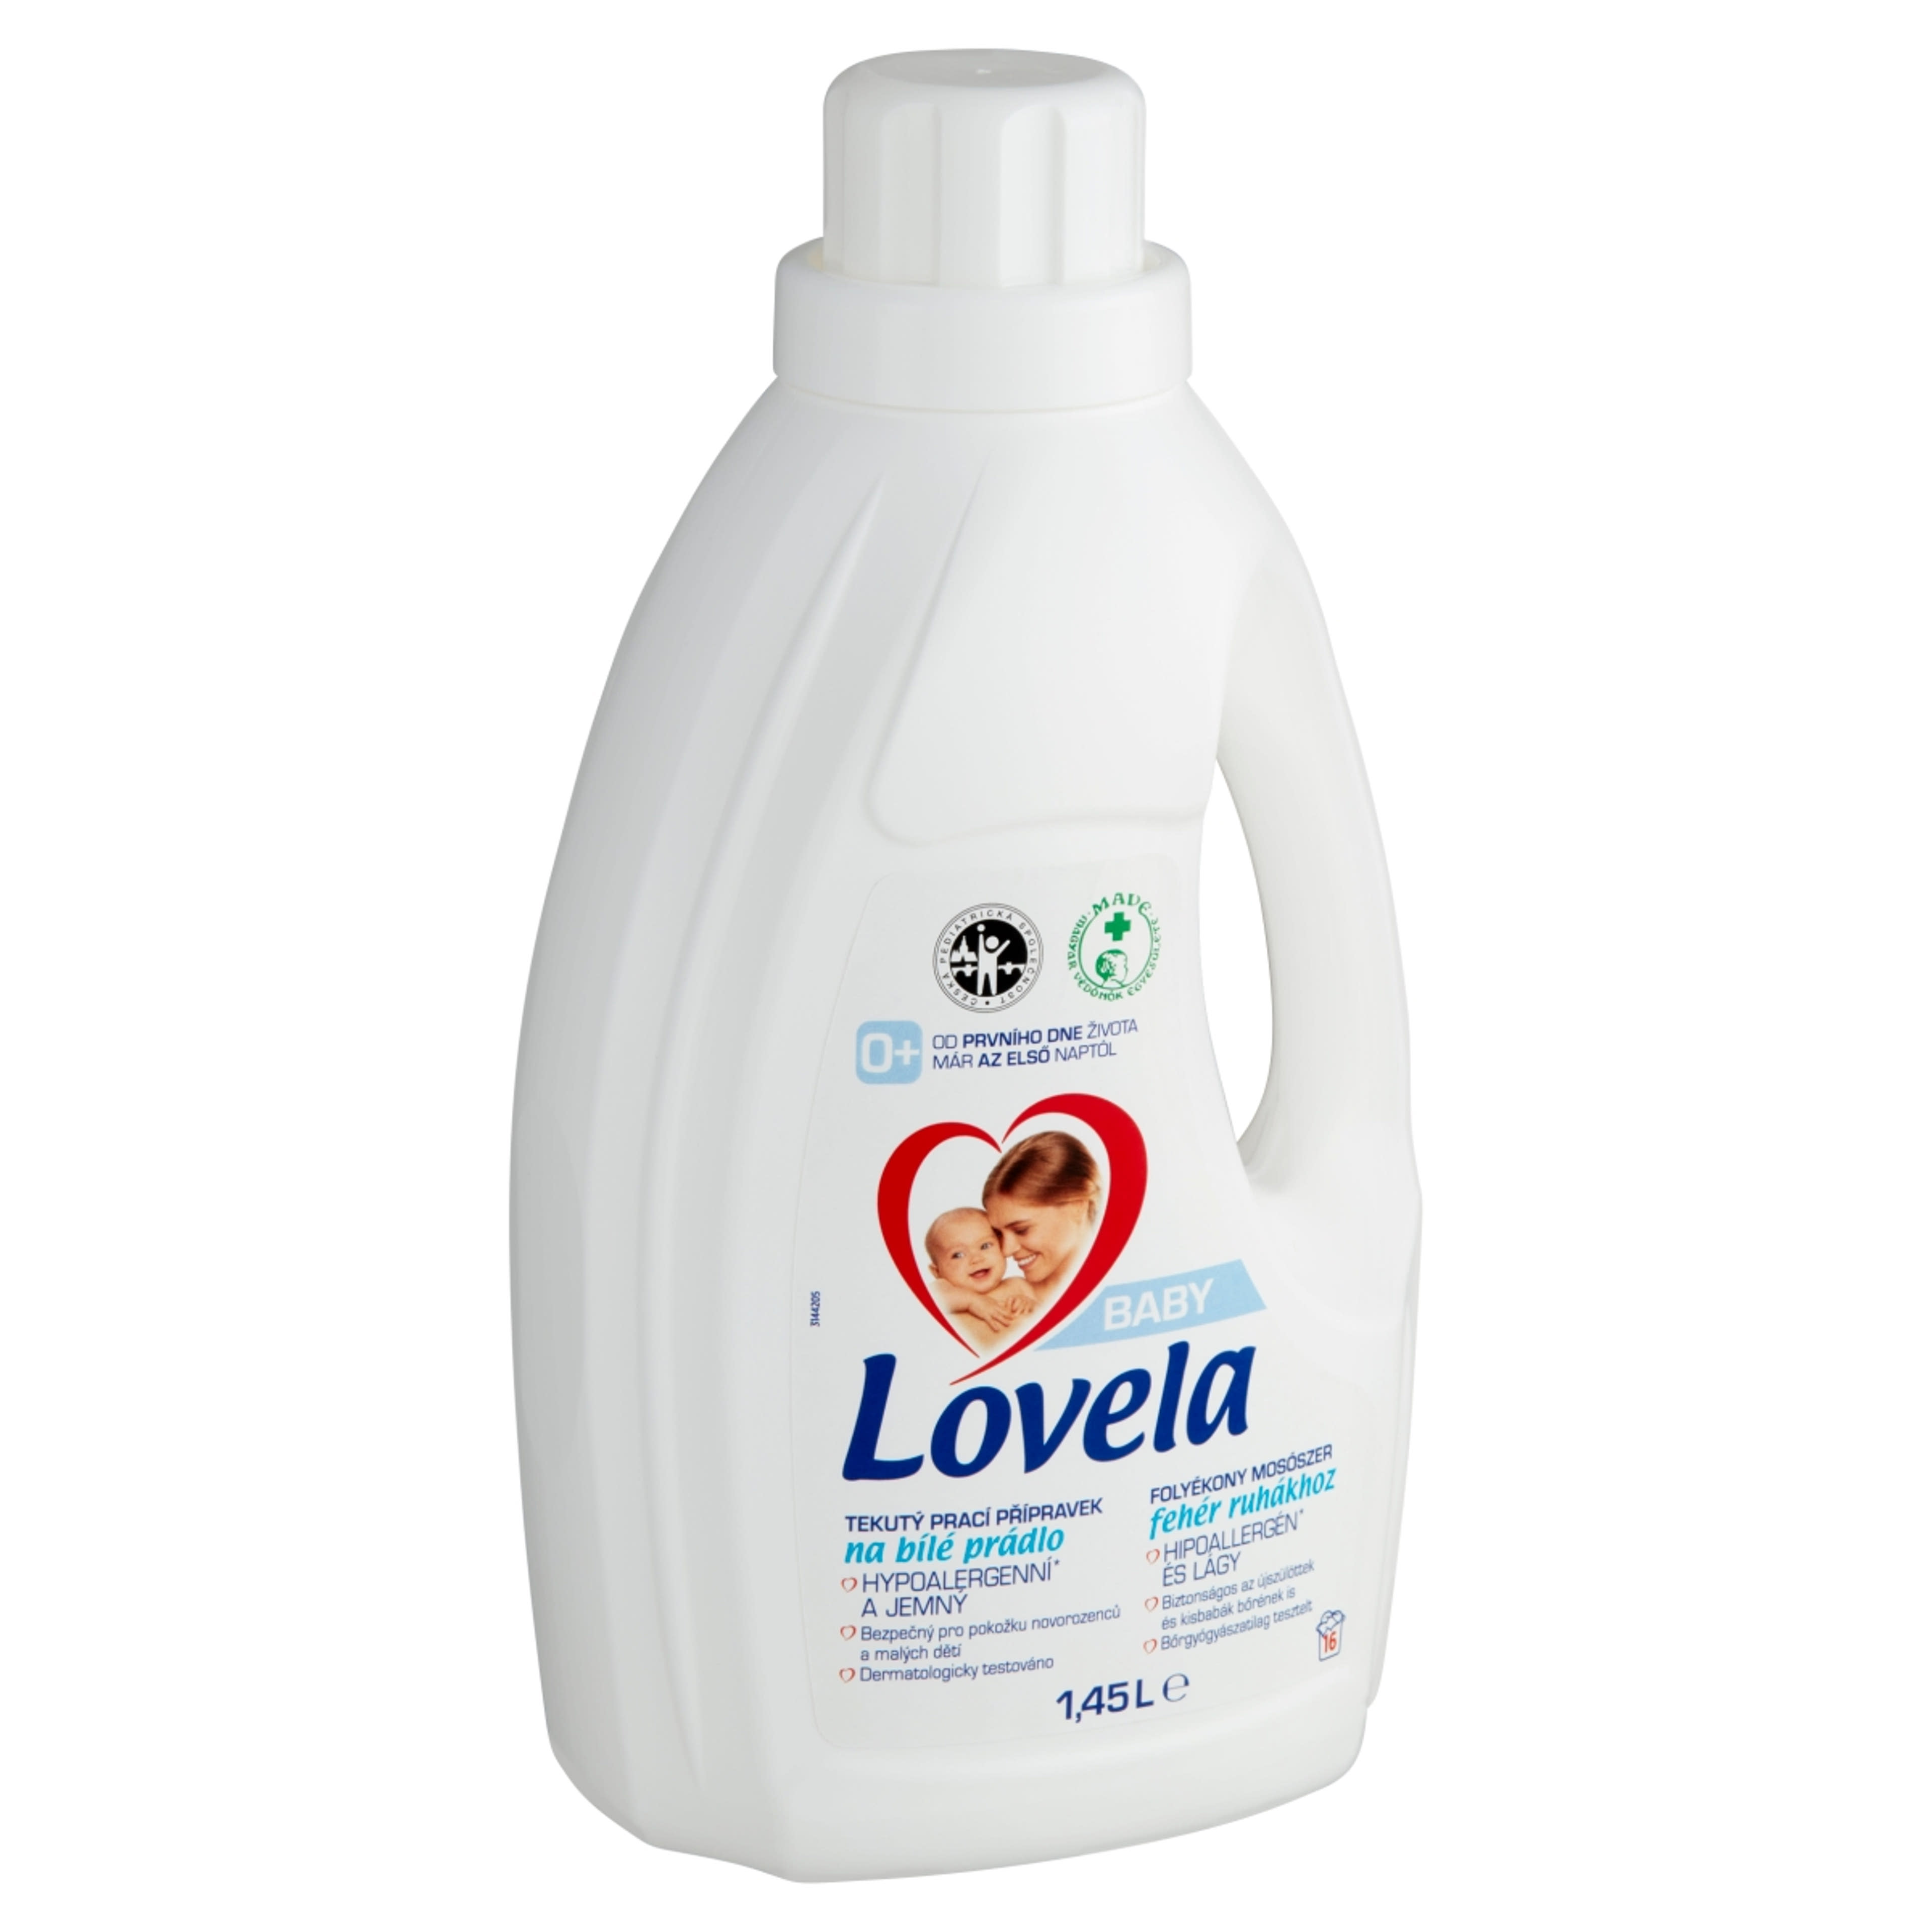 Lovela Baby folyékony mosószer fehér ruhákhoz 16 mosás - 1450 ml-2